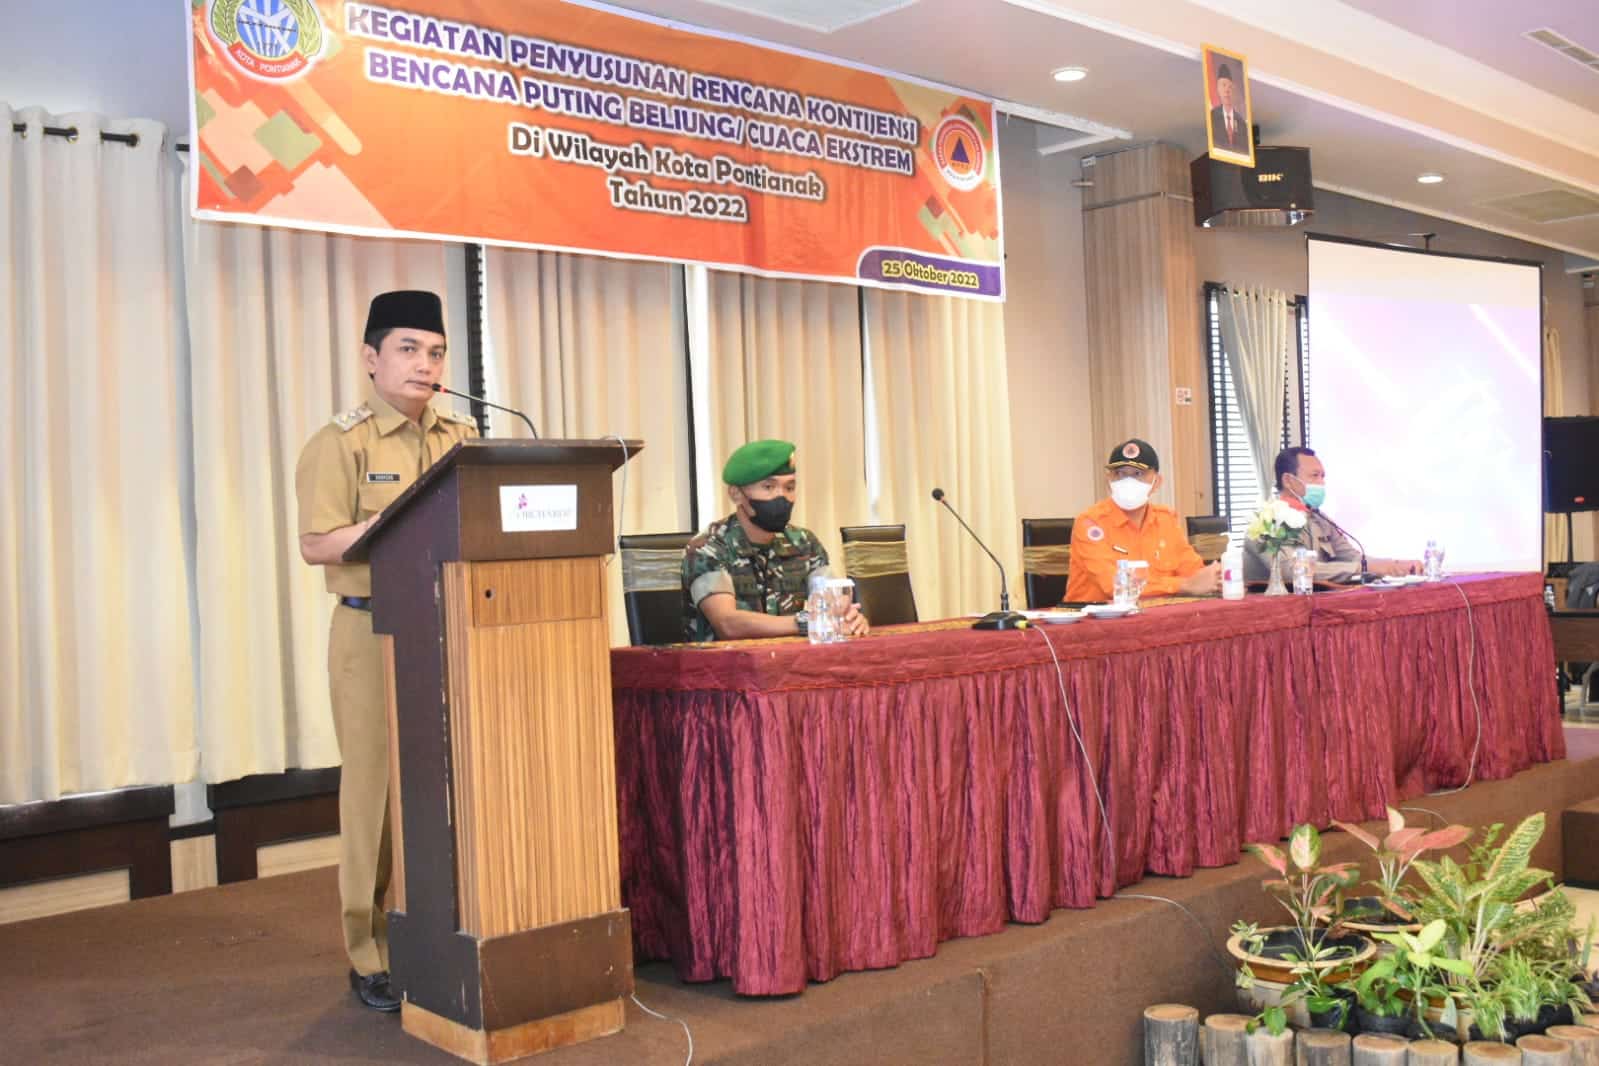 Wakil Wali Kota Pontianak, Bahasan membuka kegiatan penyusunan rencana kontijensi puting beliung. (Foto: Kominfo For KalbarOnline.com)